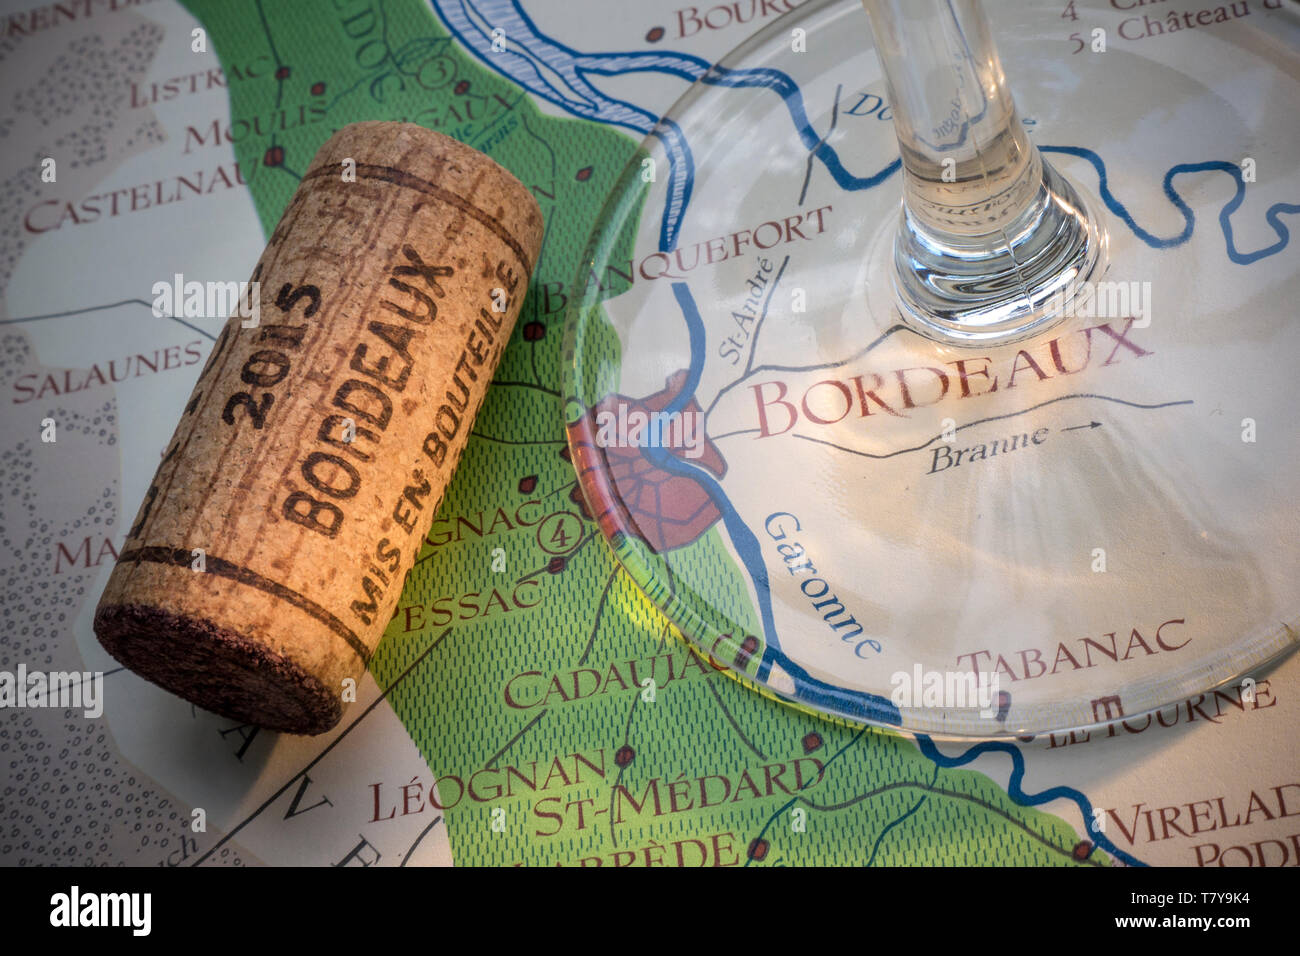 Bordeaux il vino francese tour concetto di degustazione di vino con stelo in vetro, annata 2015 Bordeaux cork in close up, sul vecchio e storico Bordeaux aree vinicole mappa Foto Stock